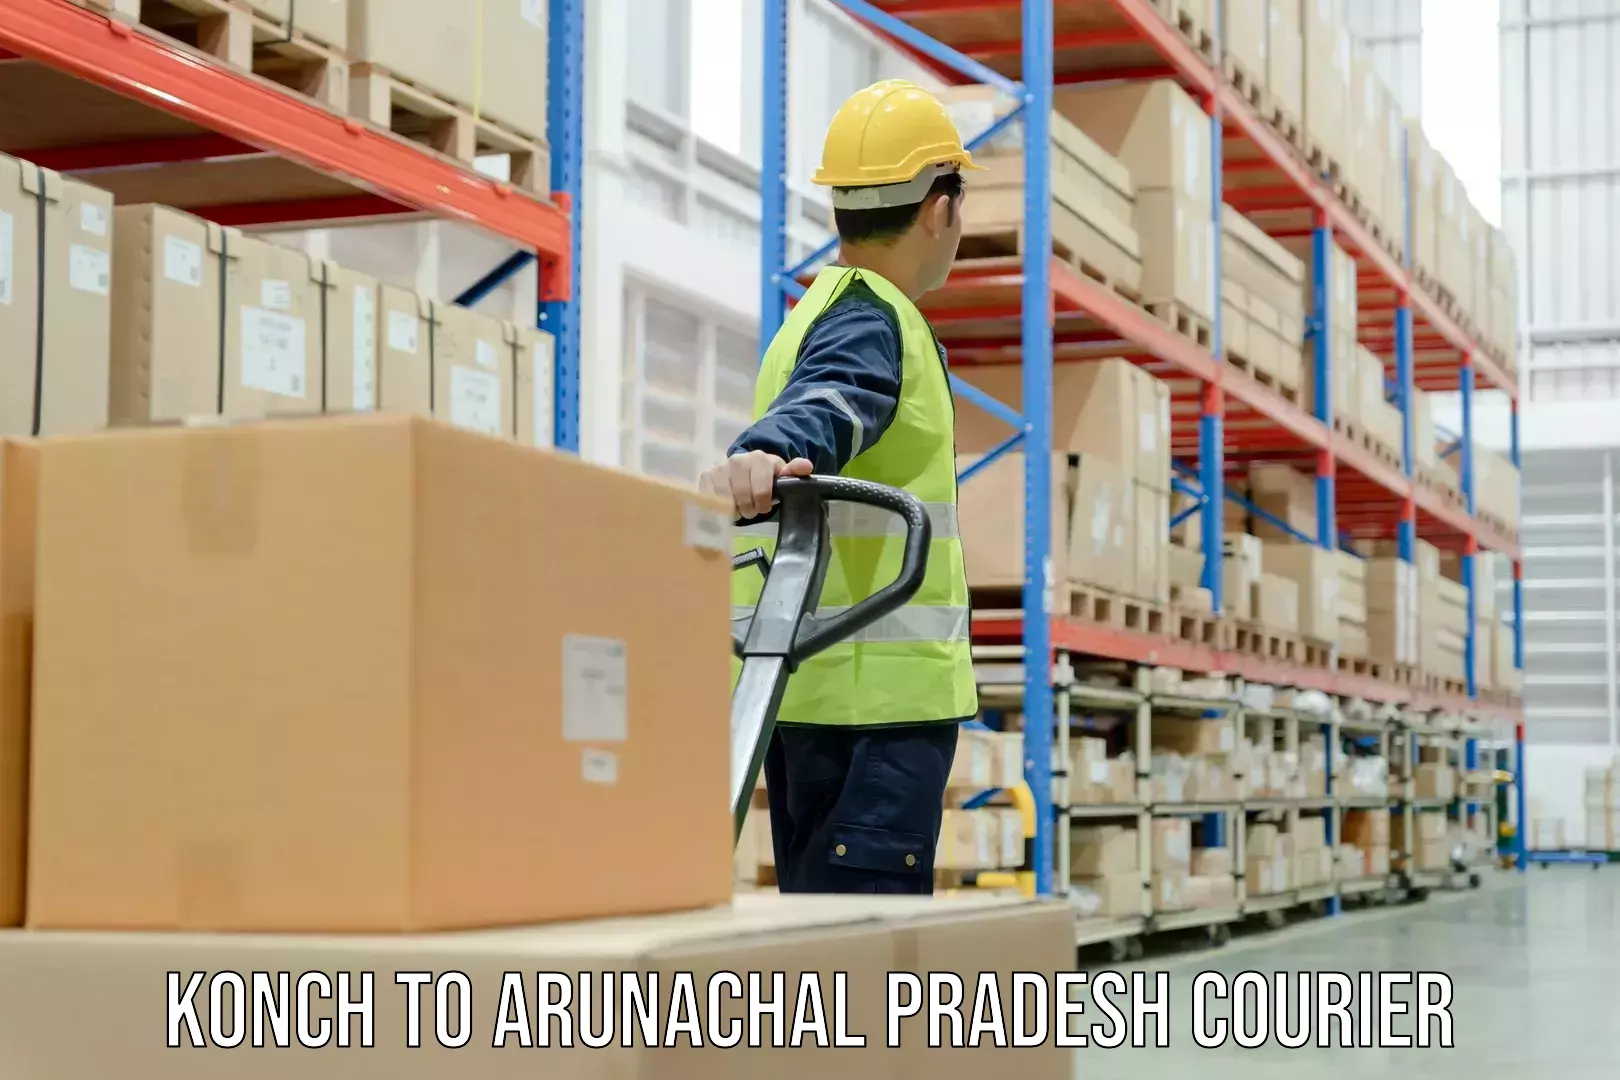 Round-the-clock parcel delivery Konch to Arunachal Pradesh